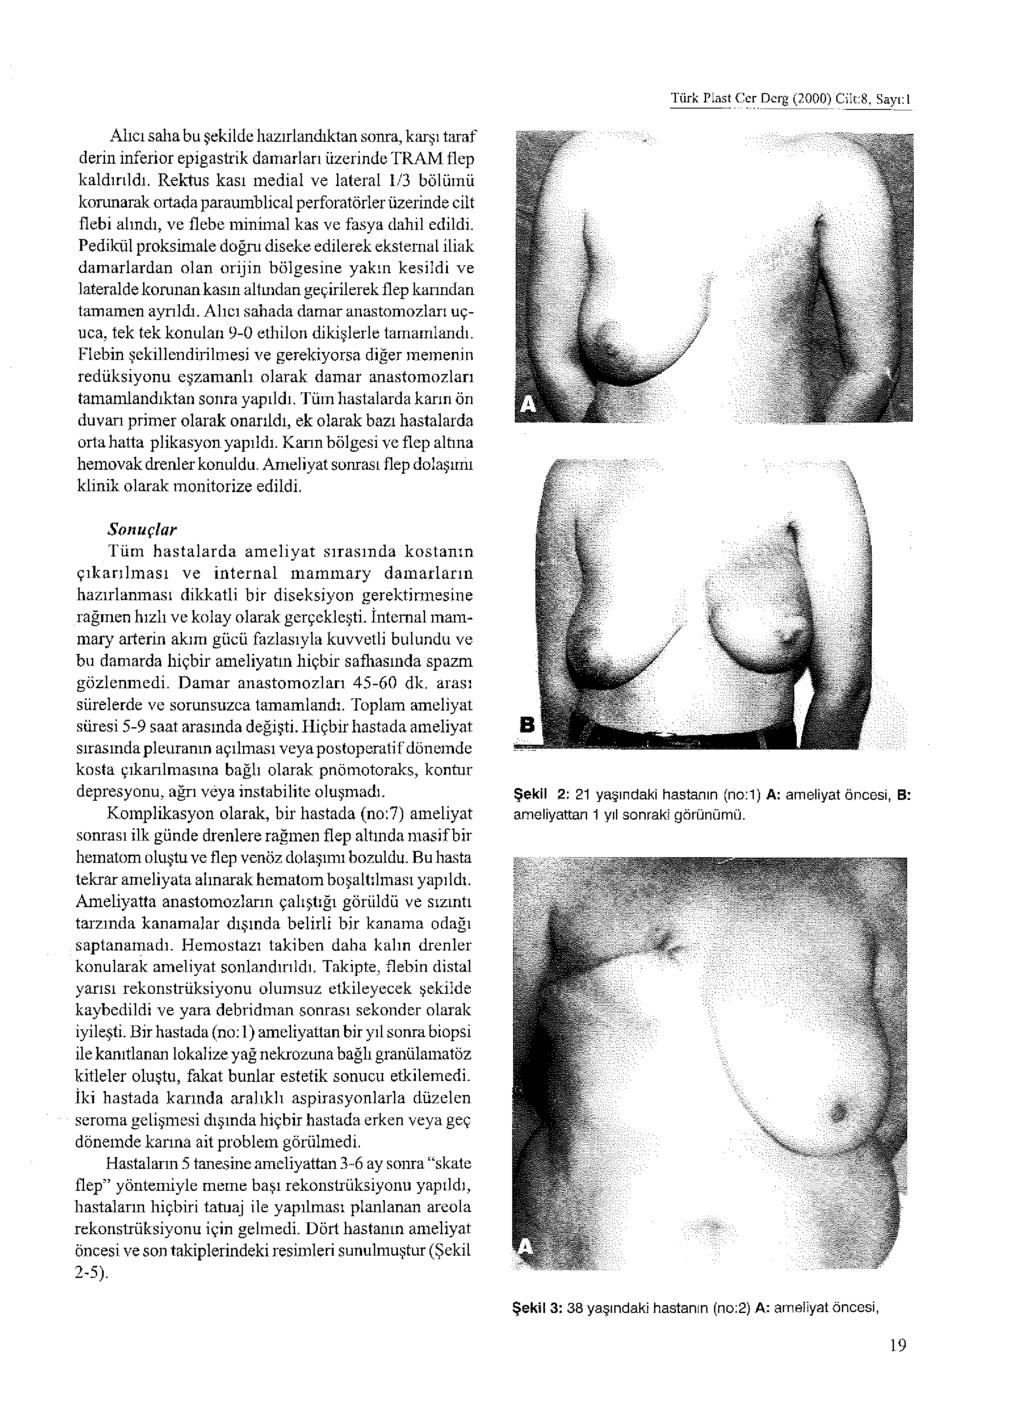 Türk Plast Cer Derg (2000) Cilt:8, Sayı: 1 Alıcı saha bu şekilde hazırlandıktan sonra, karşı taraf derin inferior epigastrik damarları üzerinde TRAM flep kaldırıldı.